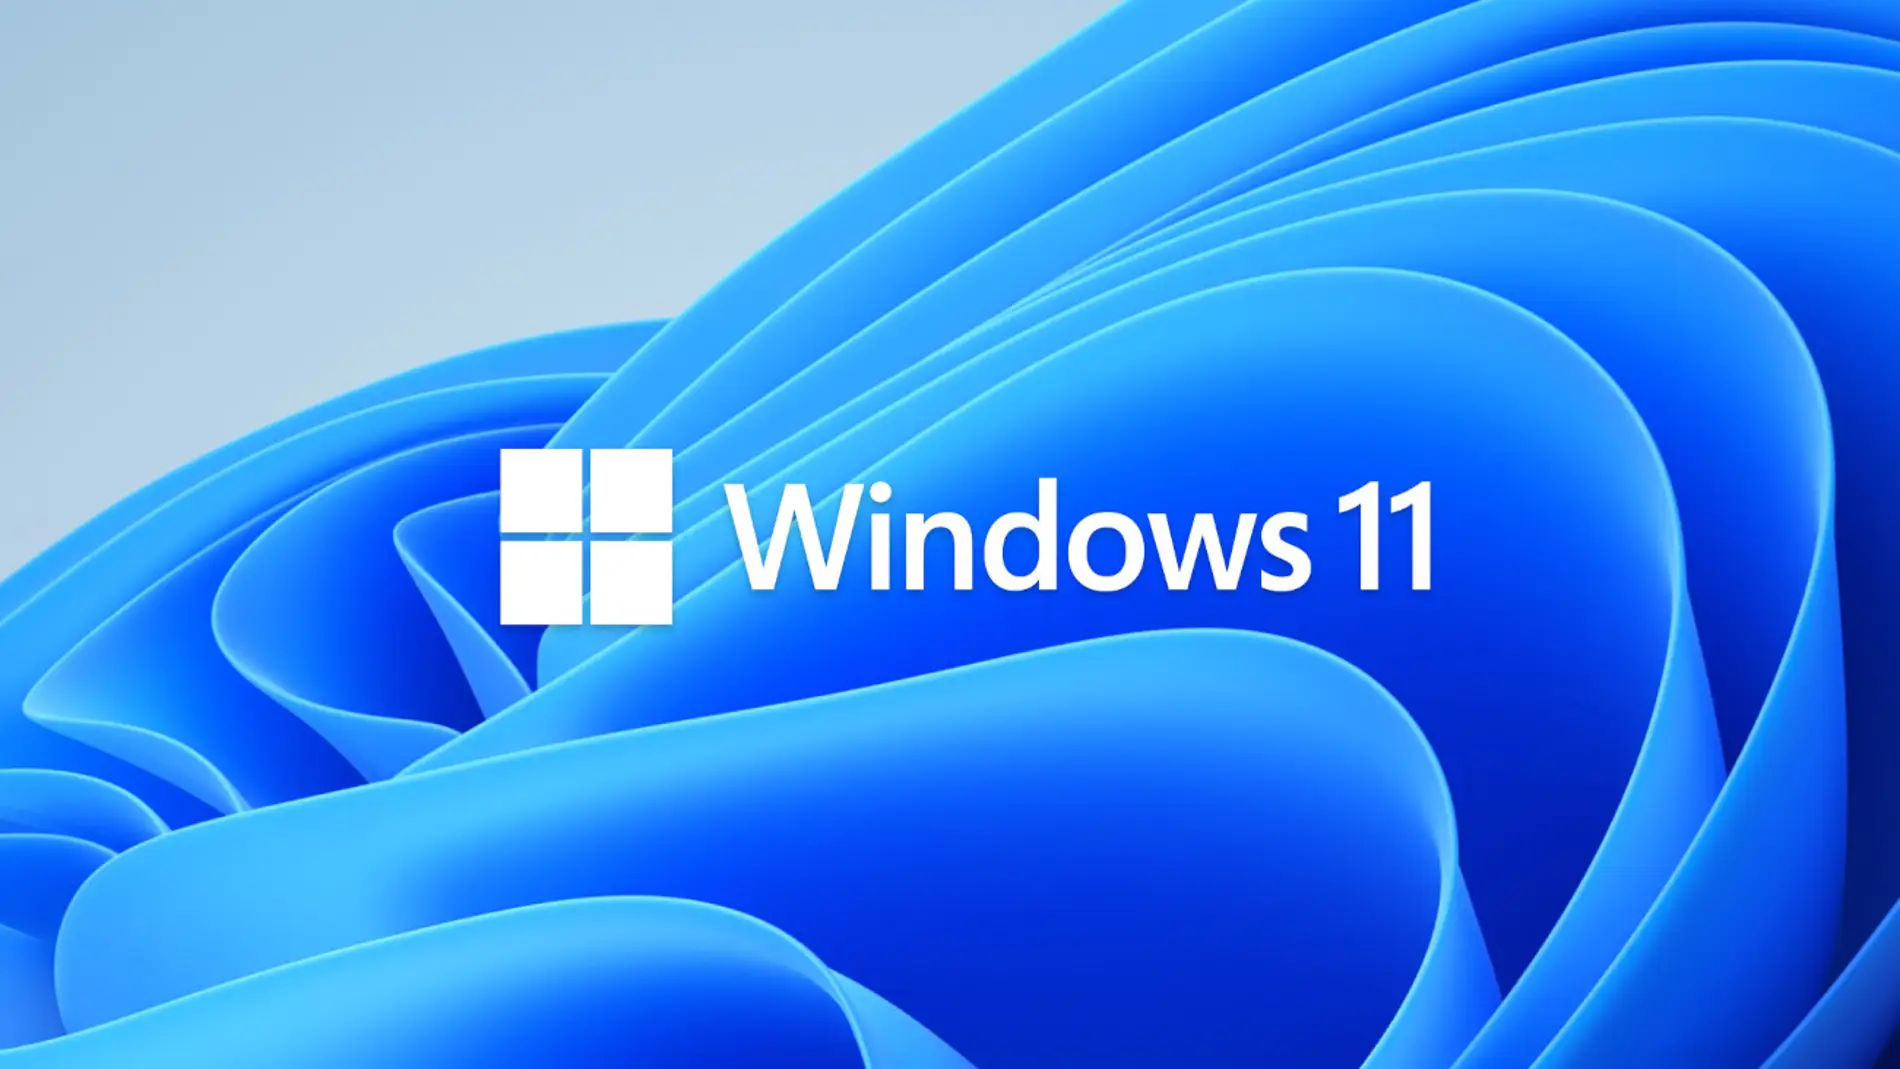 Desinstalar por defecto aplicaciones en Windows 11 para que funcione más rápido